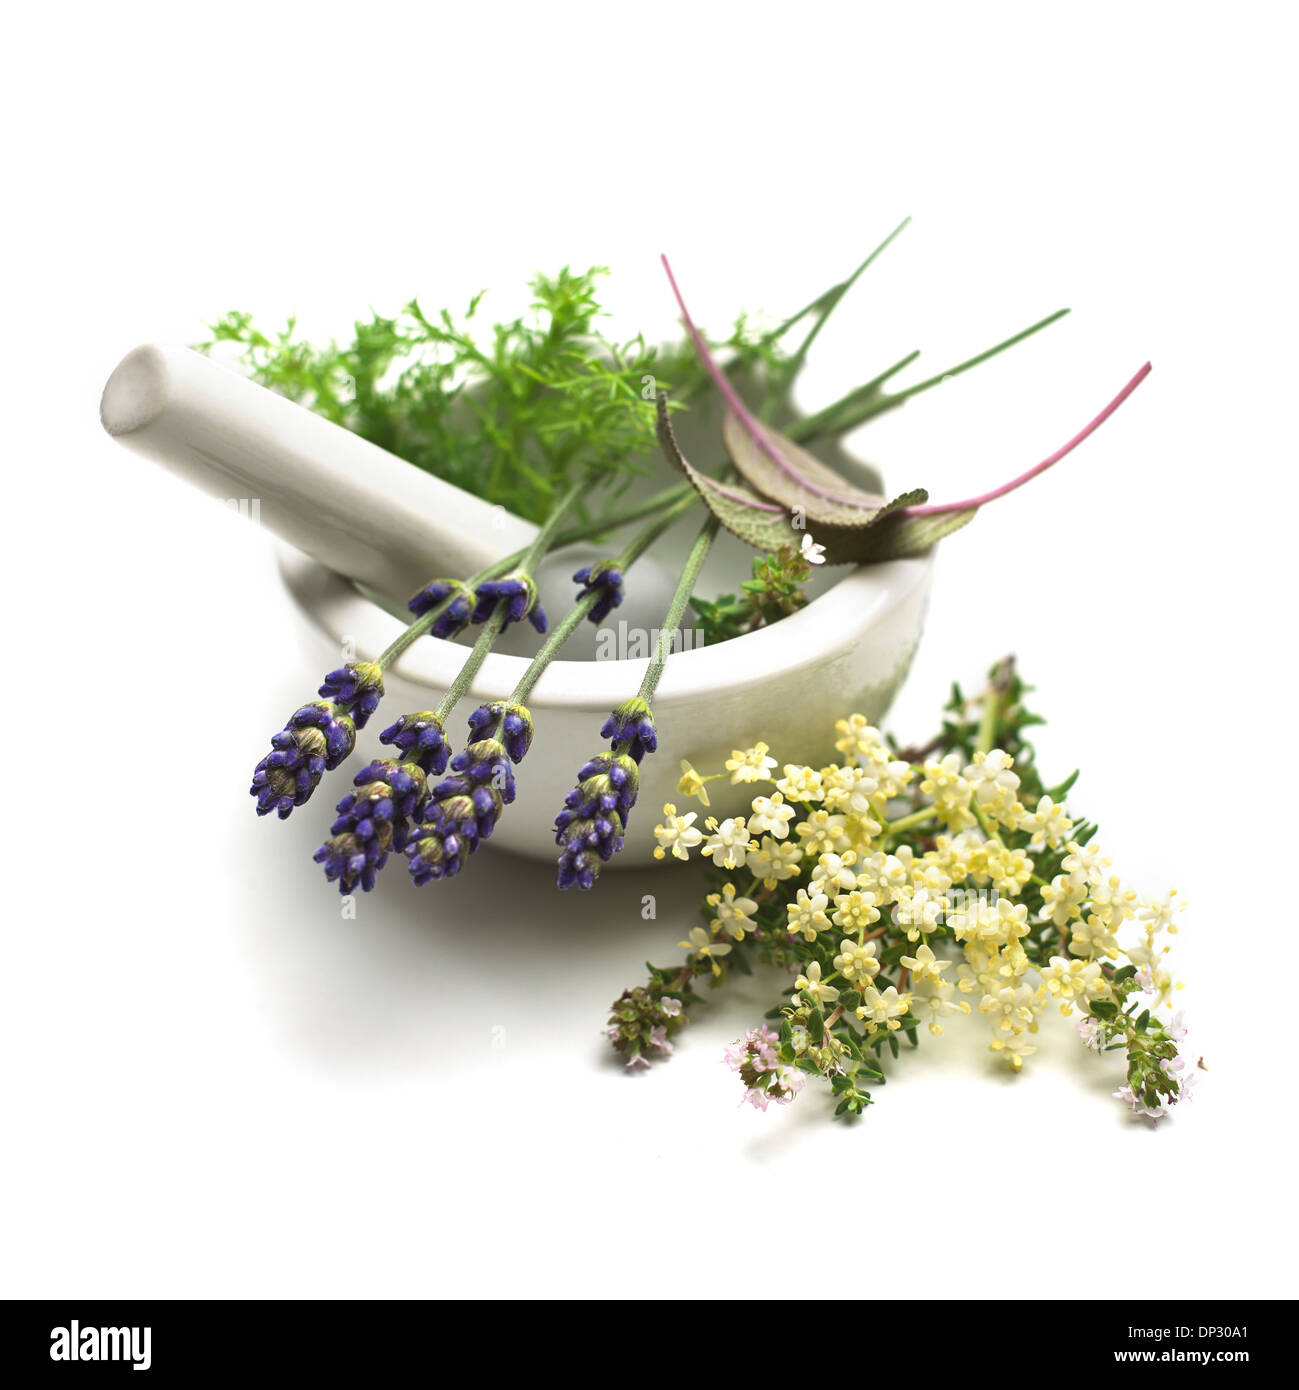 Plantes médicinales, conceptual image Banque D'Images